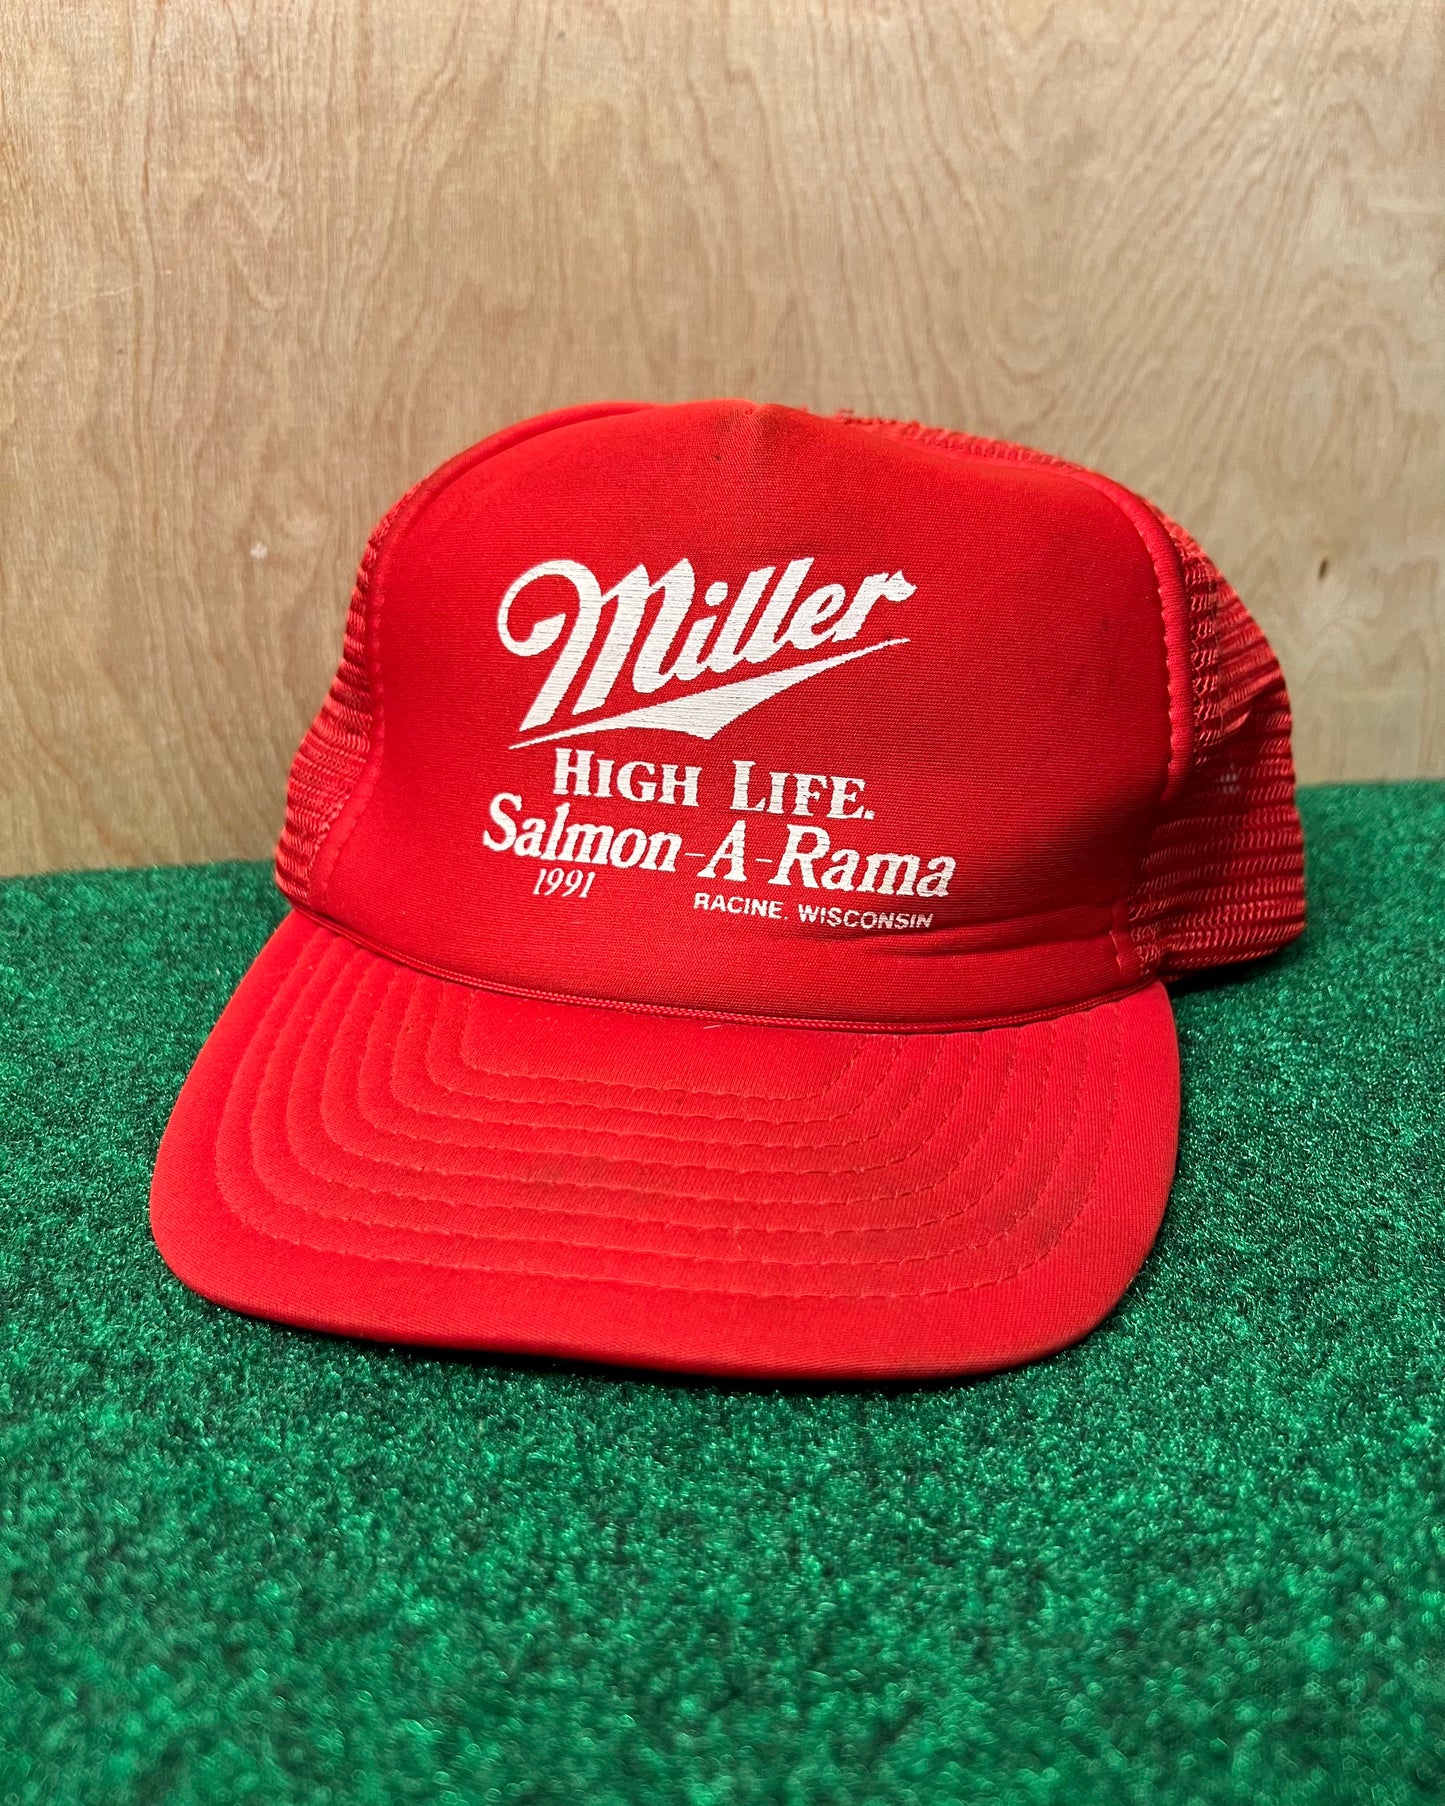 1991 Miller High Life Salmon-A-Rama